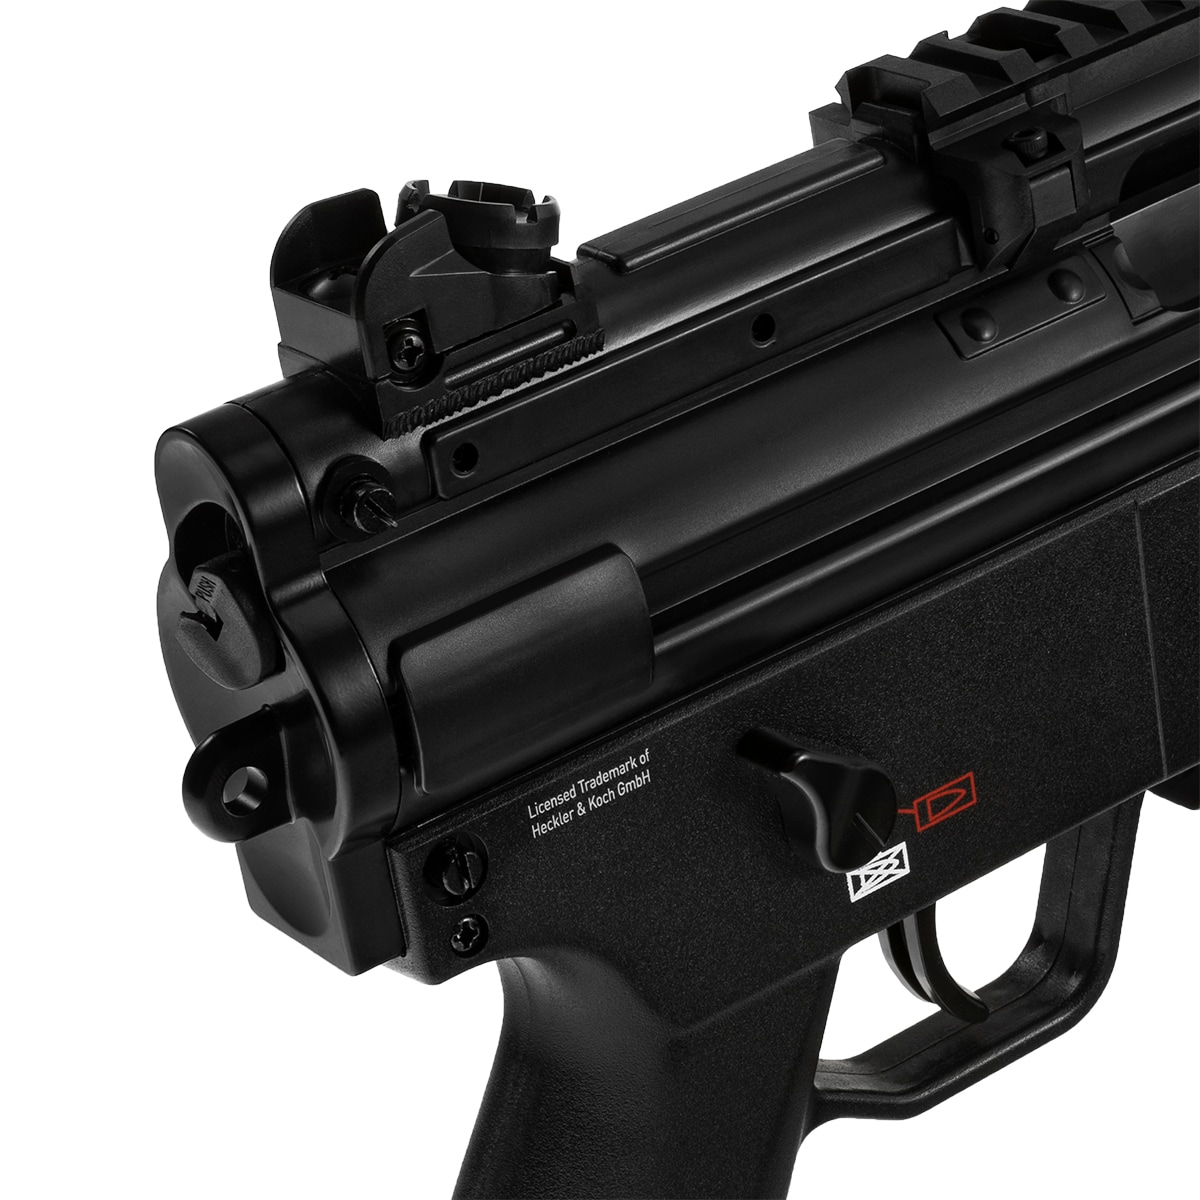 Пістолет-кулемет GBB Heckler&Koch MP5 K